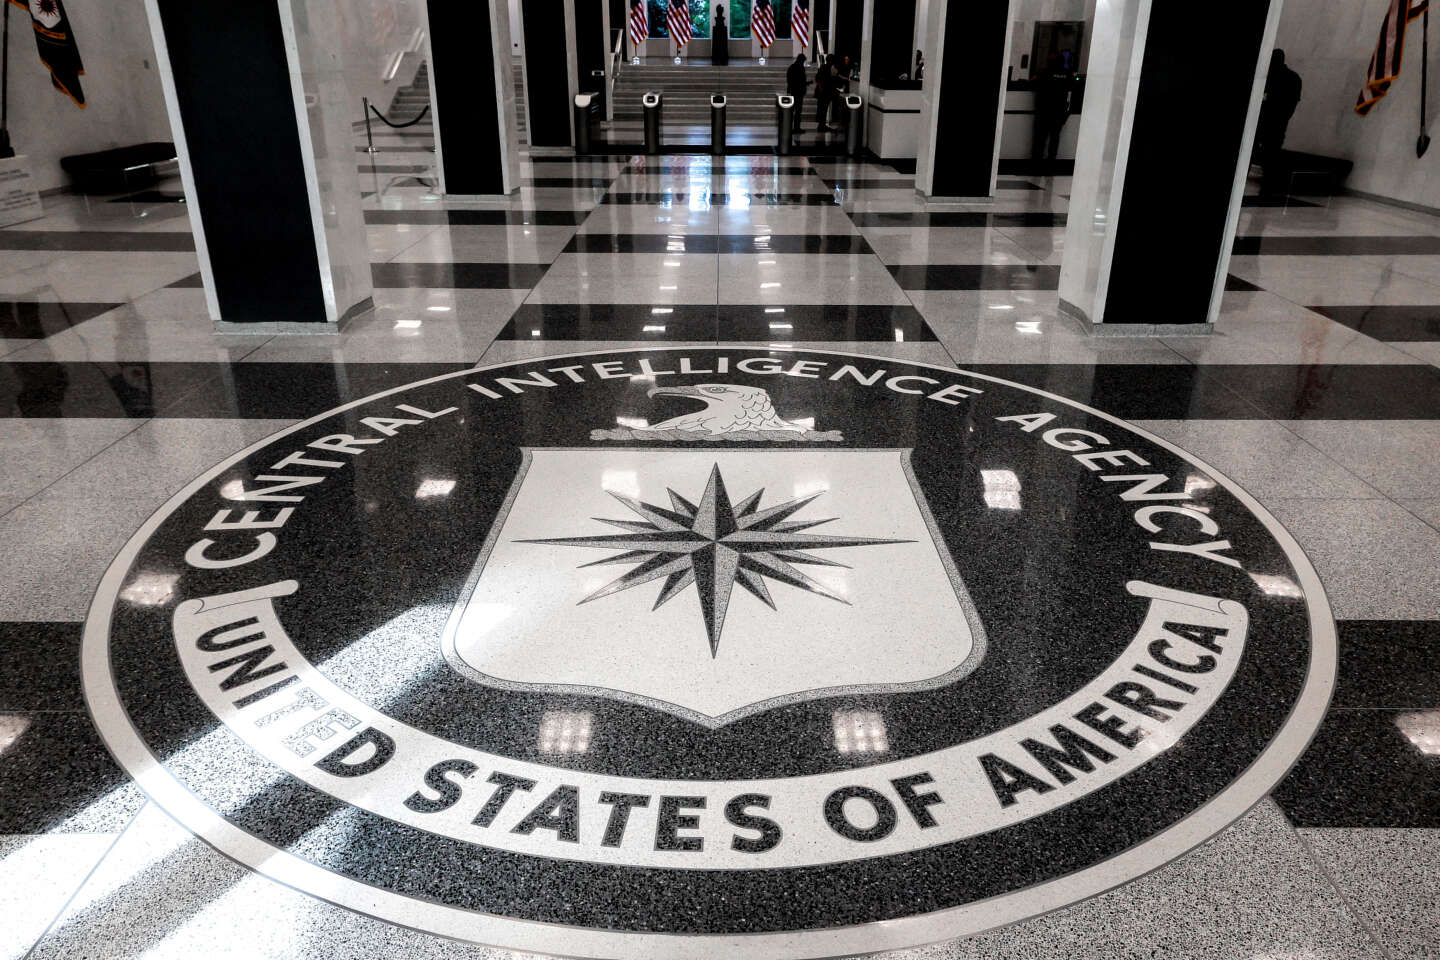 Un ancien informaticien de la CIA responsable d’une fuite massive de données sur WikiLeaks condamné à quarante ans de prison